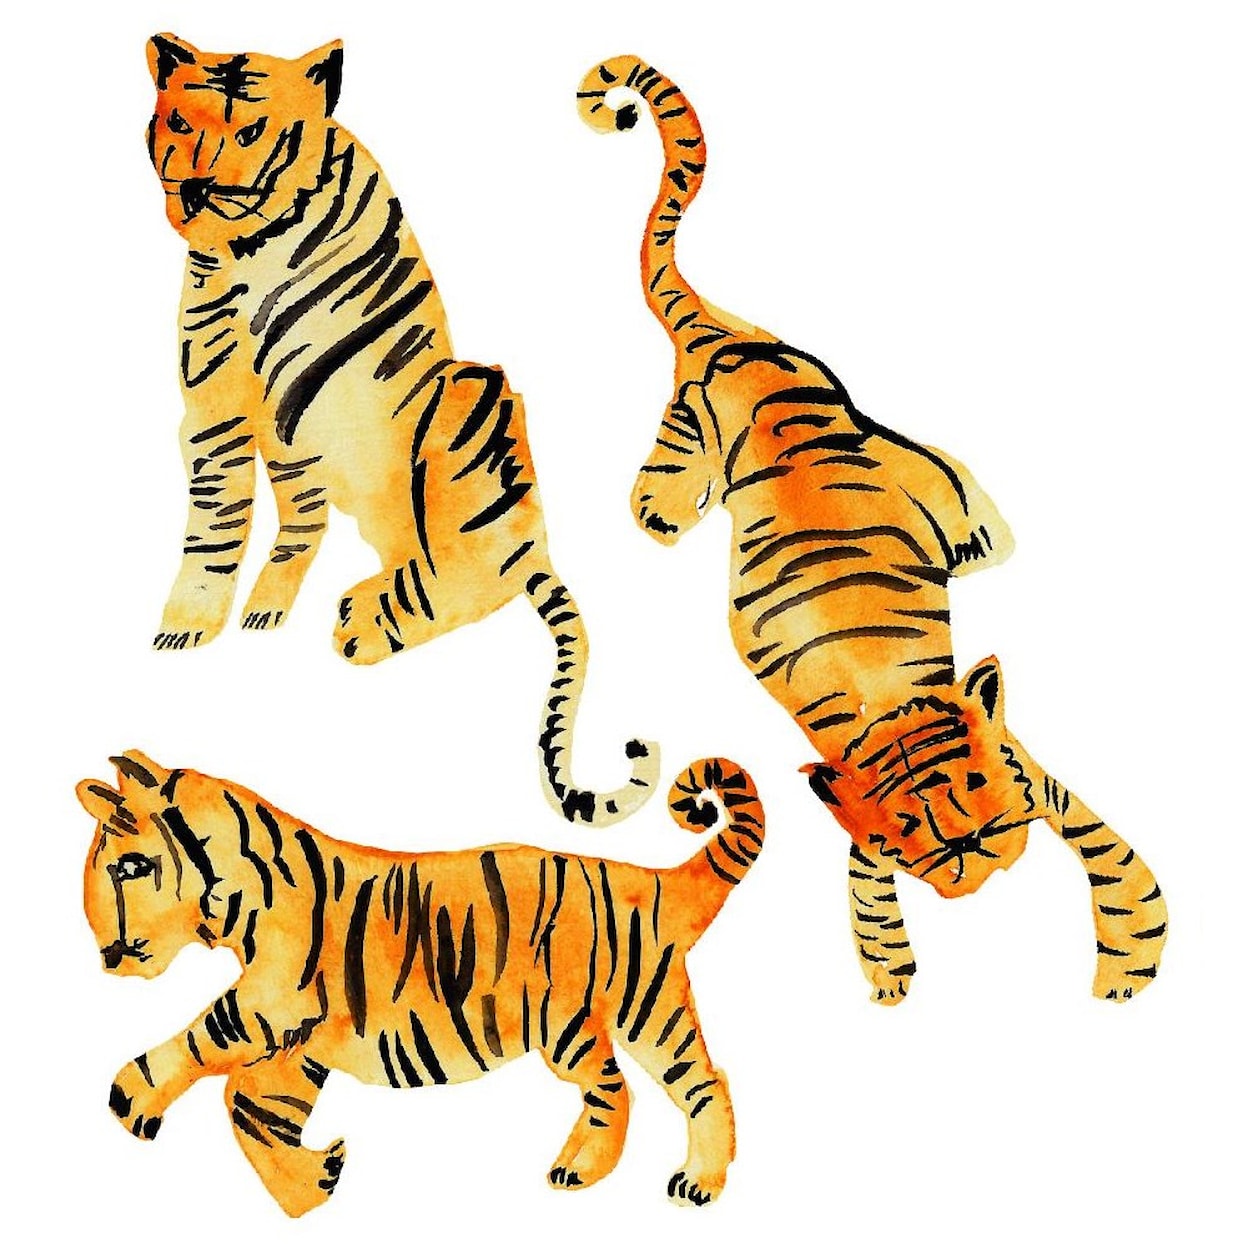 Tempaper Wall Decals Watercolor Tiger